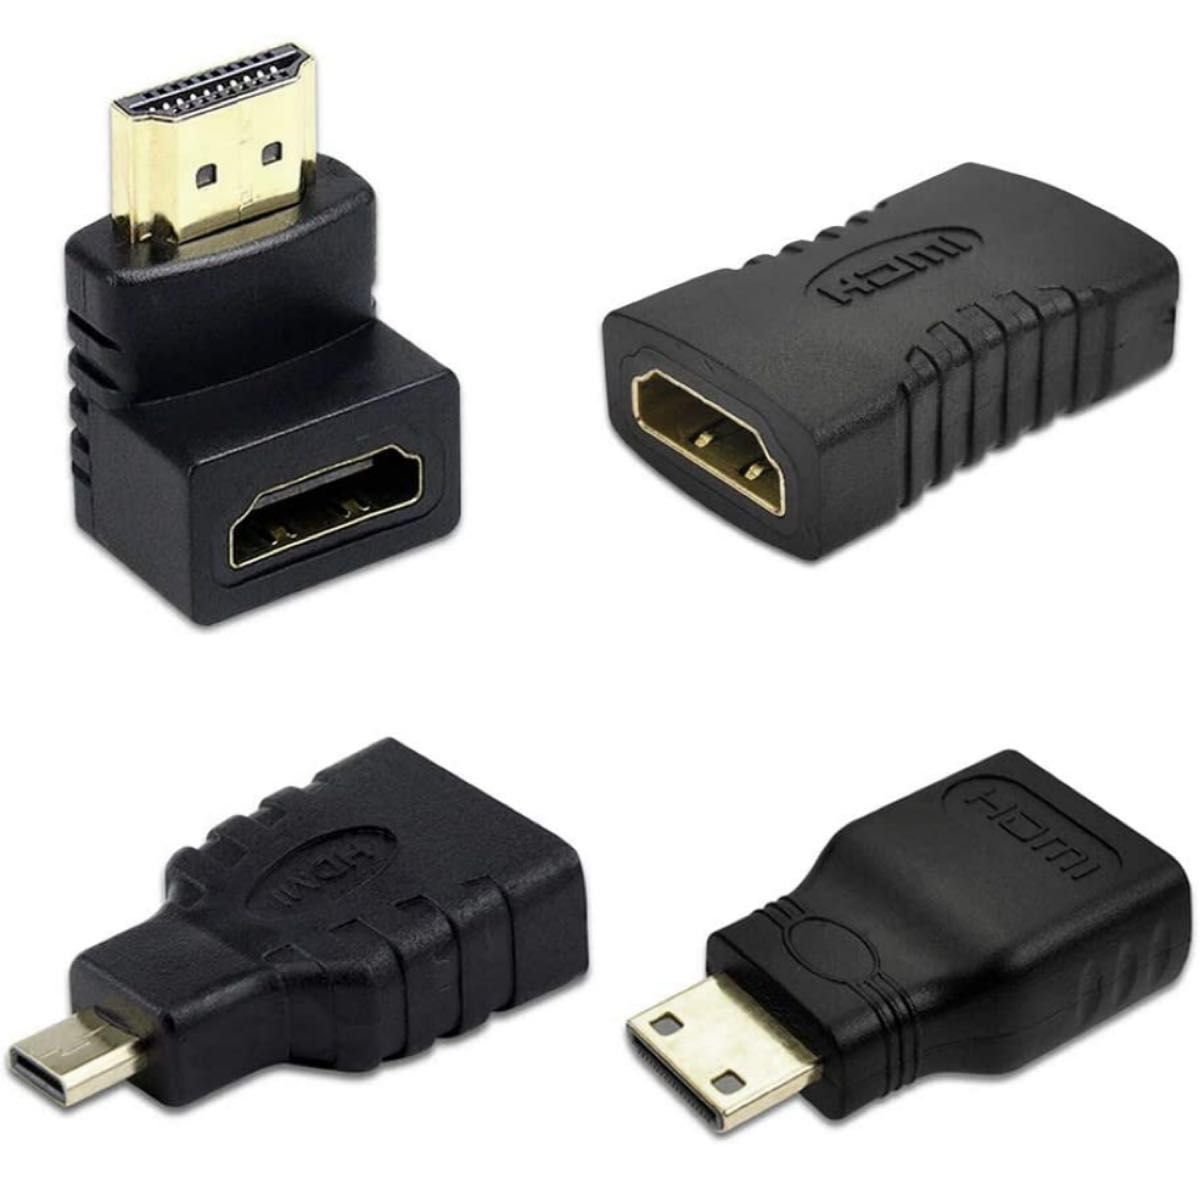  HDMIコネクタをミニHDMIコネクタに変換する HDMI変換アダプタ